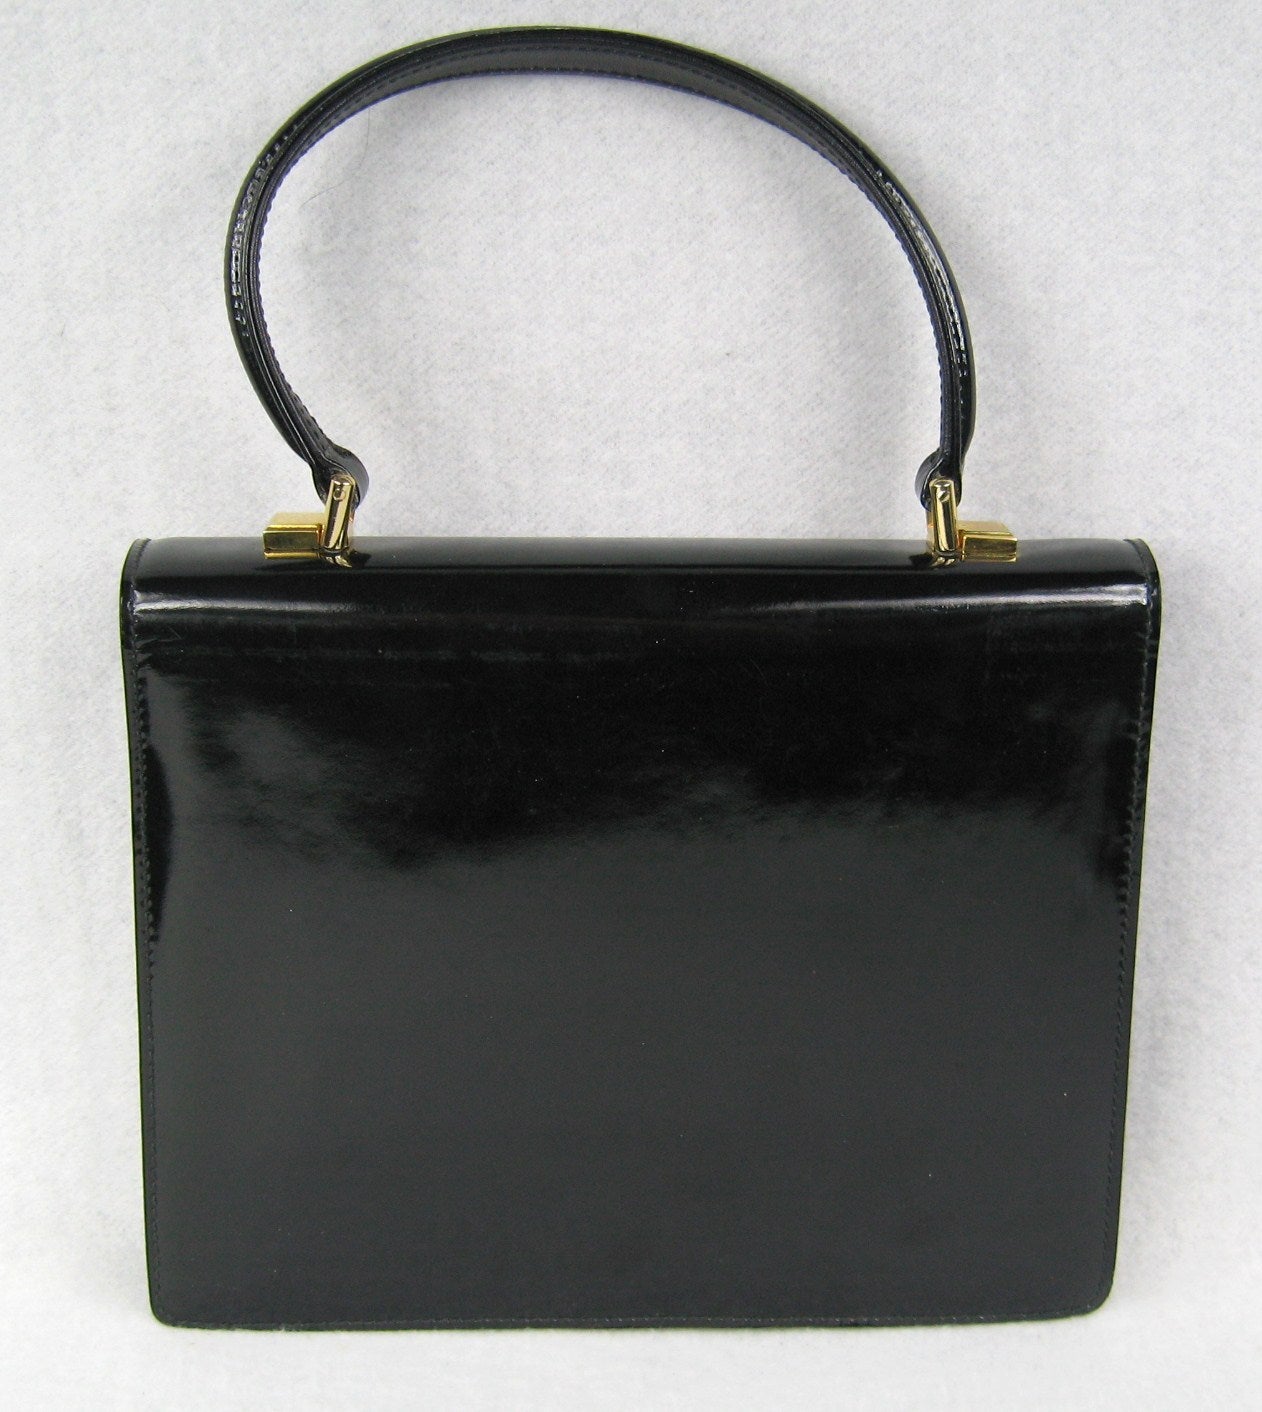 Gucci Vintage Black Calf Handbag 1960s New Old Stock at 1stdibs